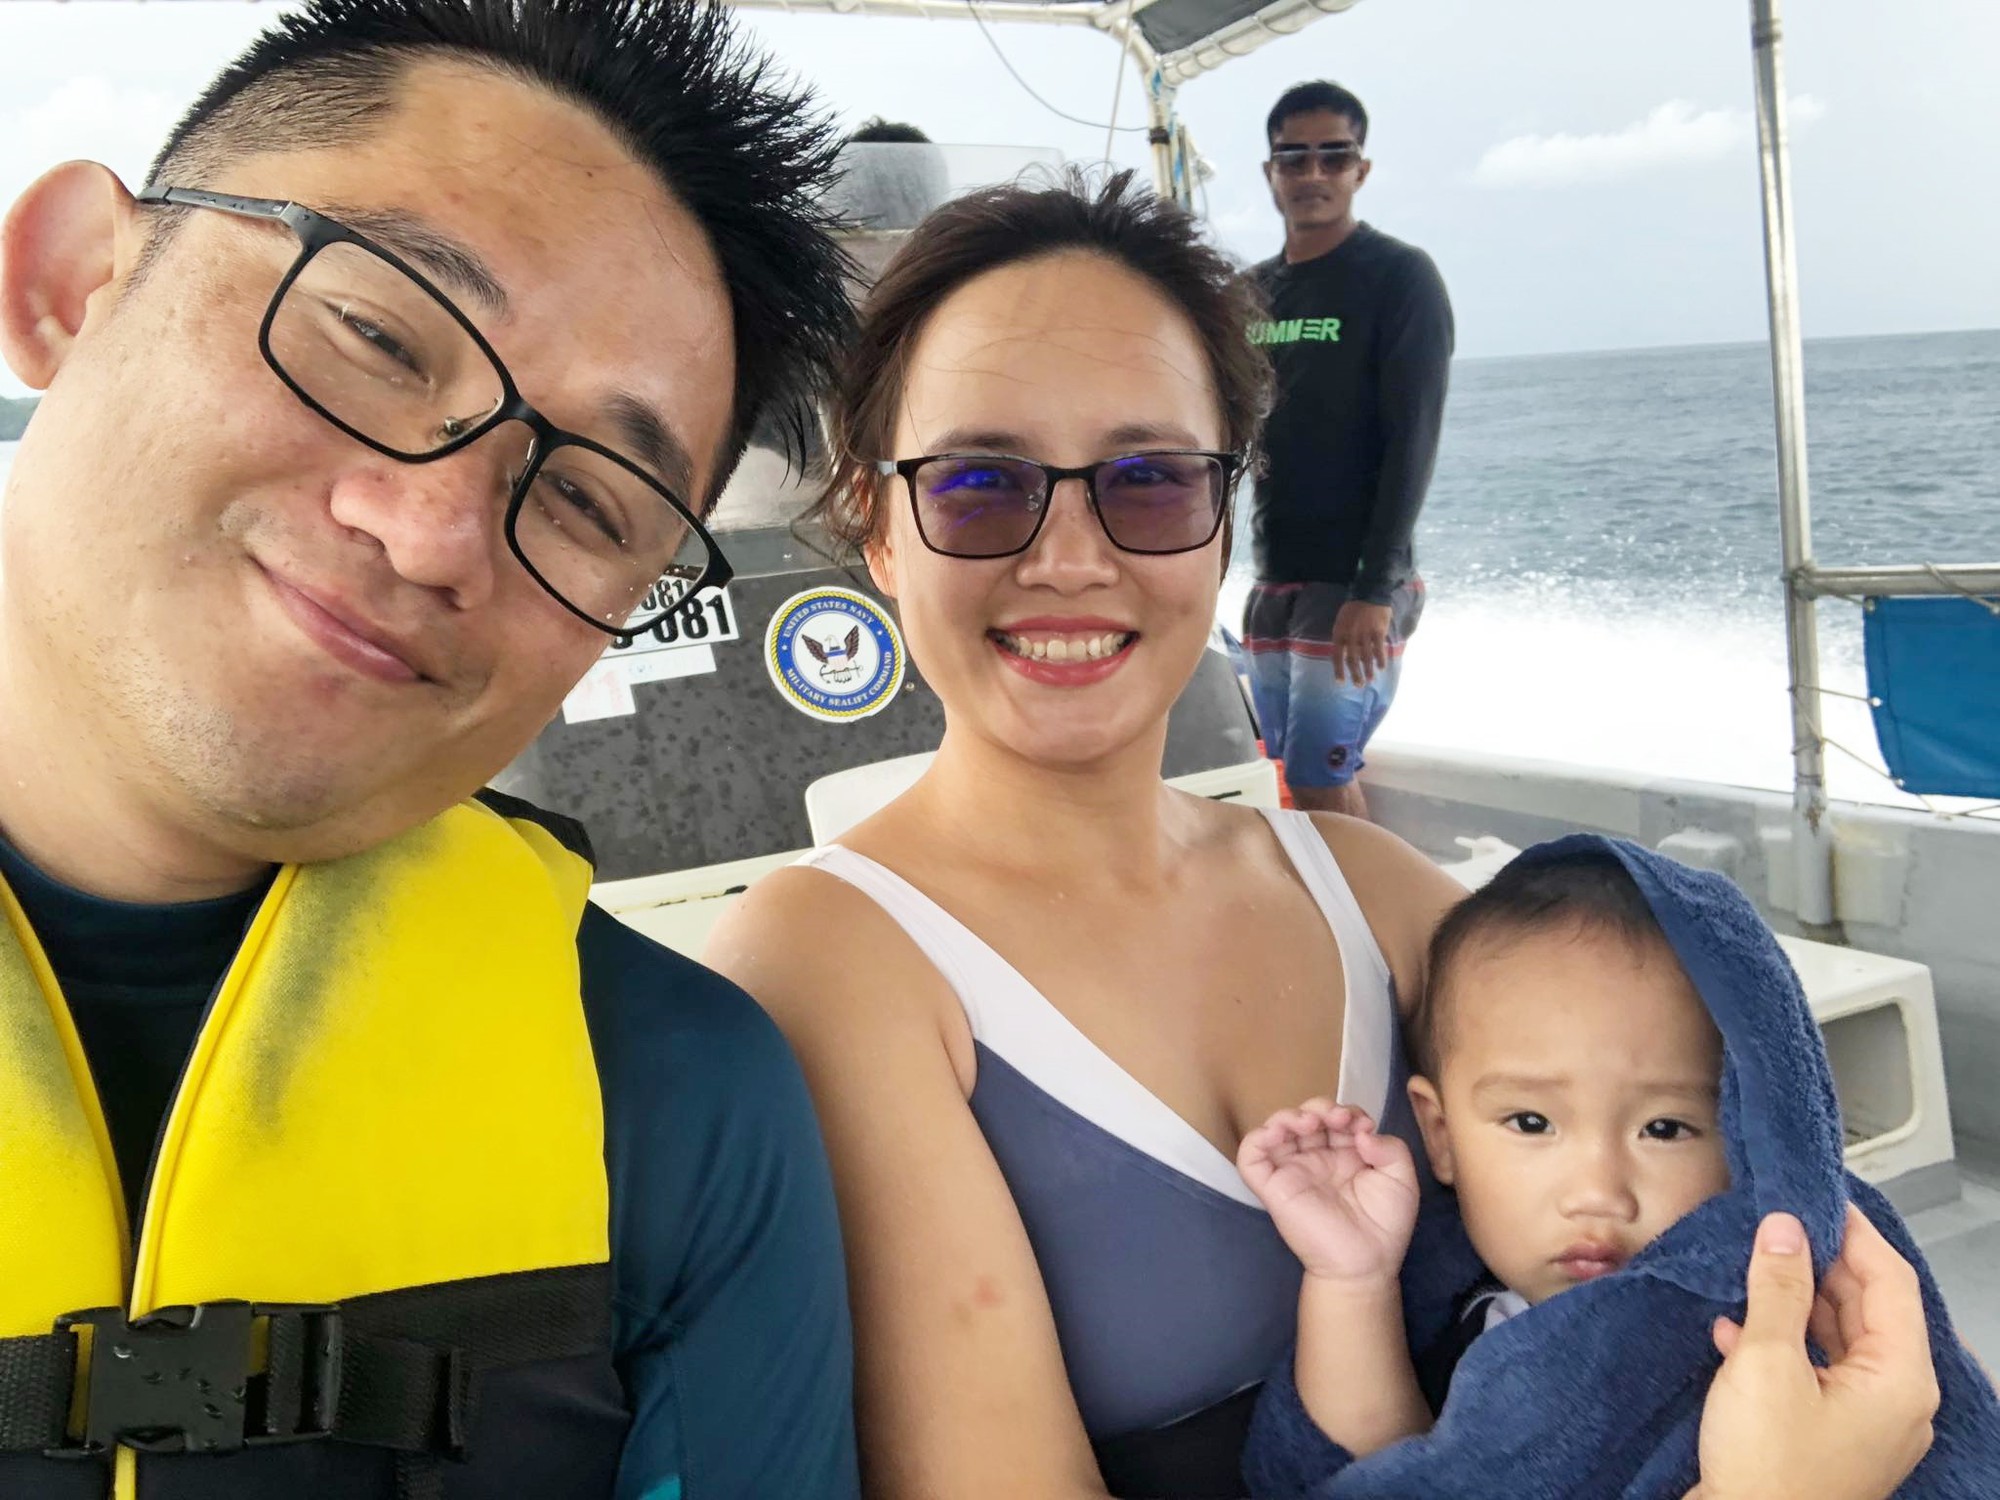 Du lịch thiên đường lặn biển Palau cùng gia đình con nhỏ 14 tháng, chồng lái trực thăng đưa vợ đi chơi - Ảnh 7.